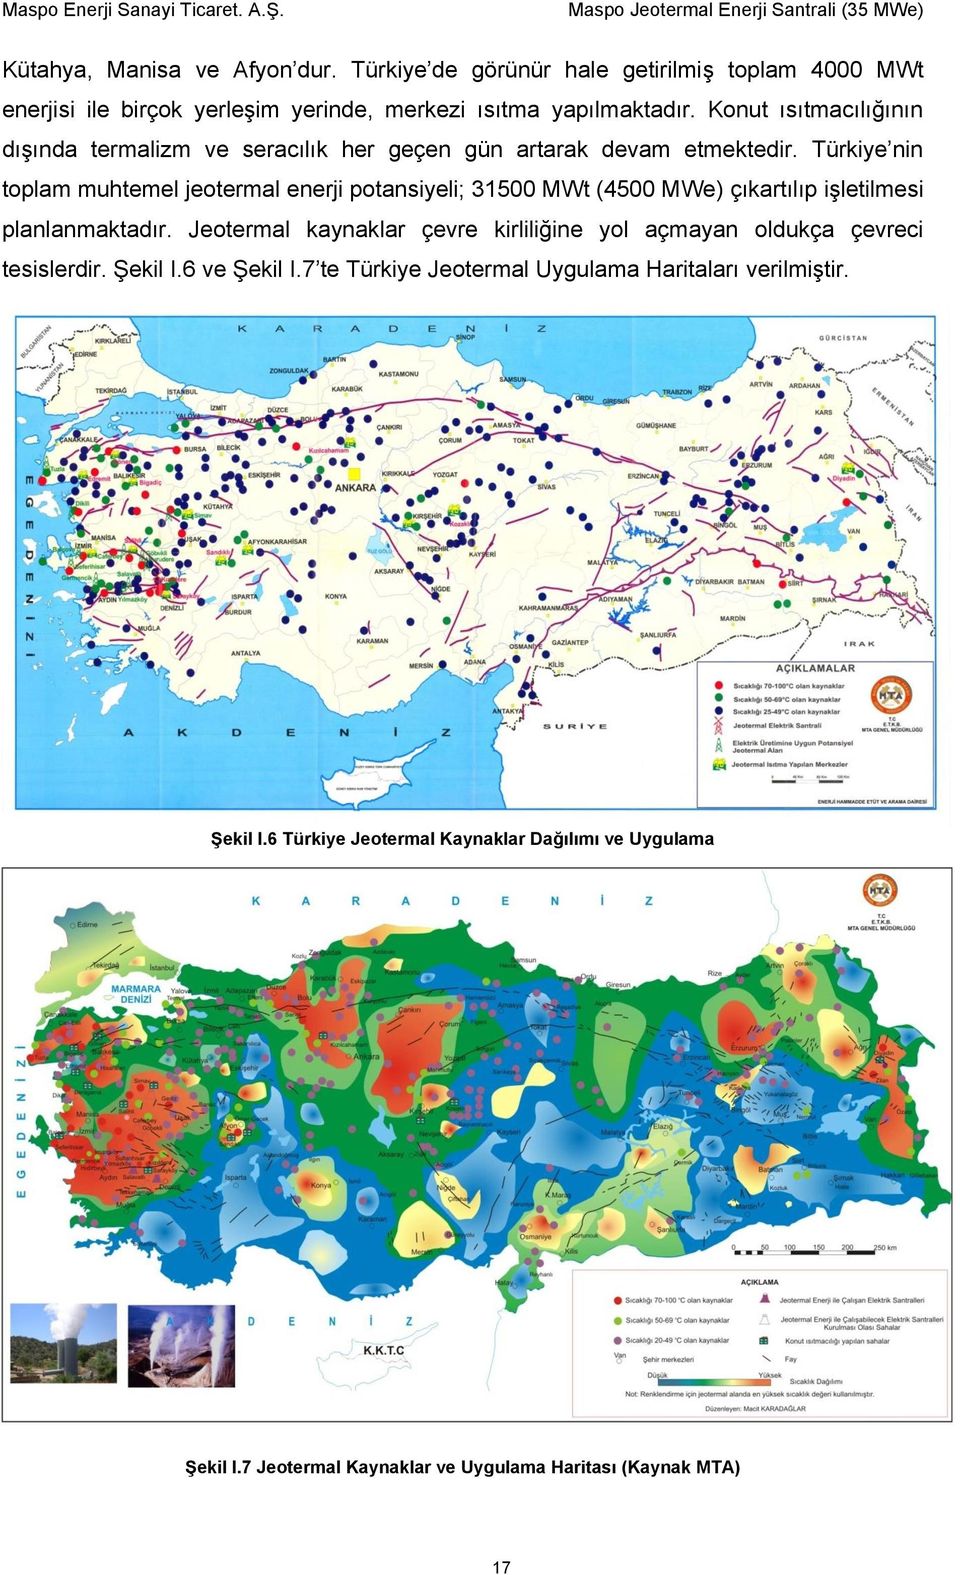 Türkiye nin toplam muhtemel jeotermal enerji potansiyeli; 31500 MWt (4500 MWe) çıkartılıp işletilmesi planlanmaktadır.